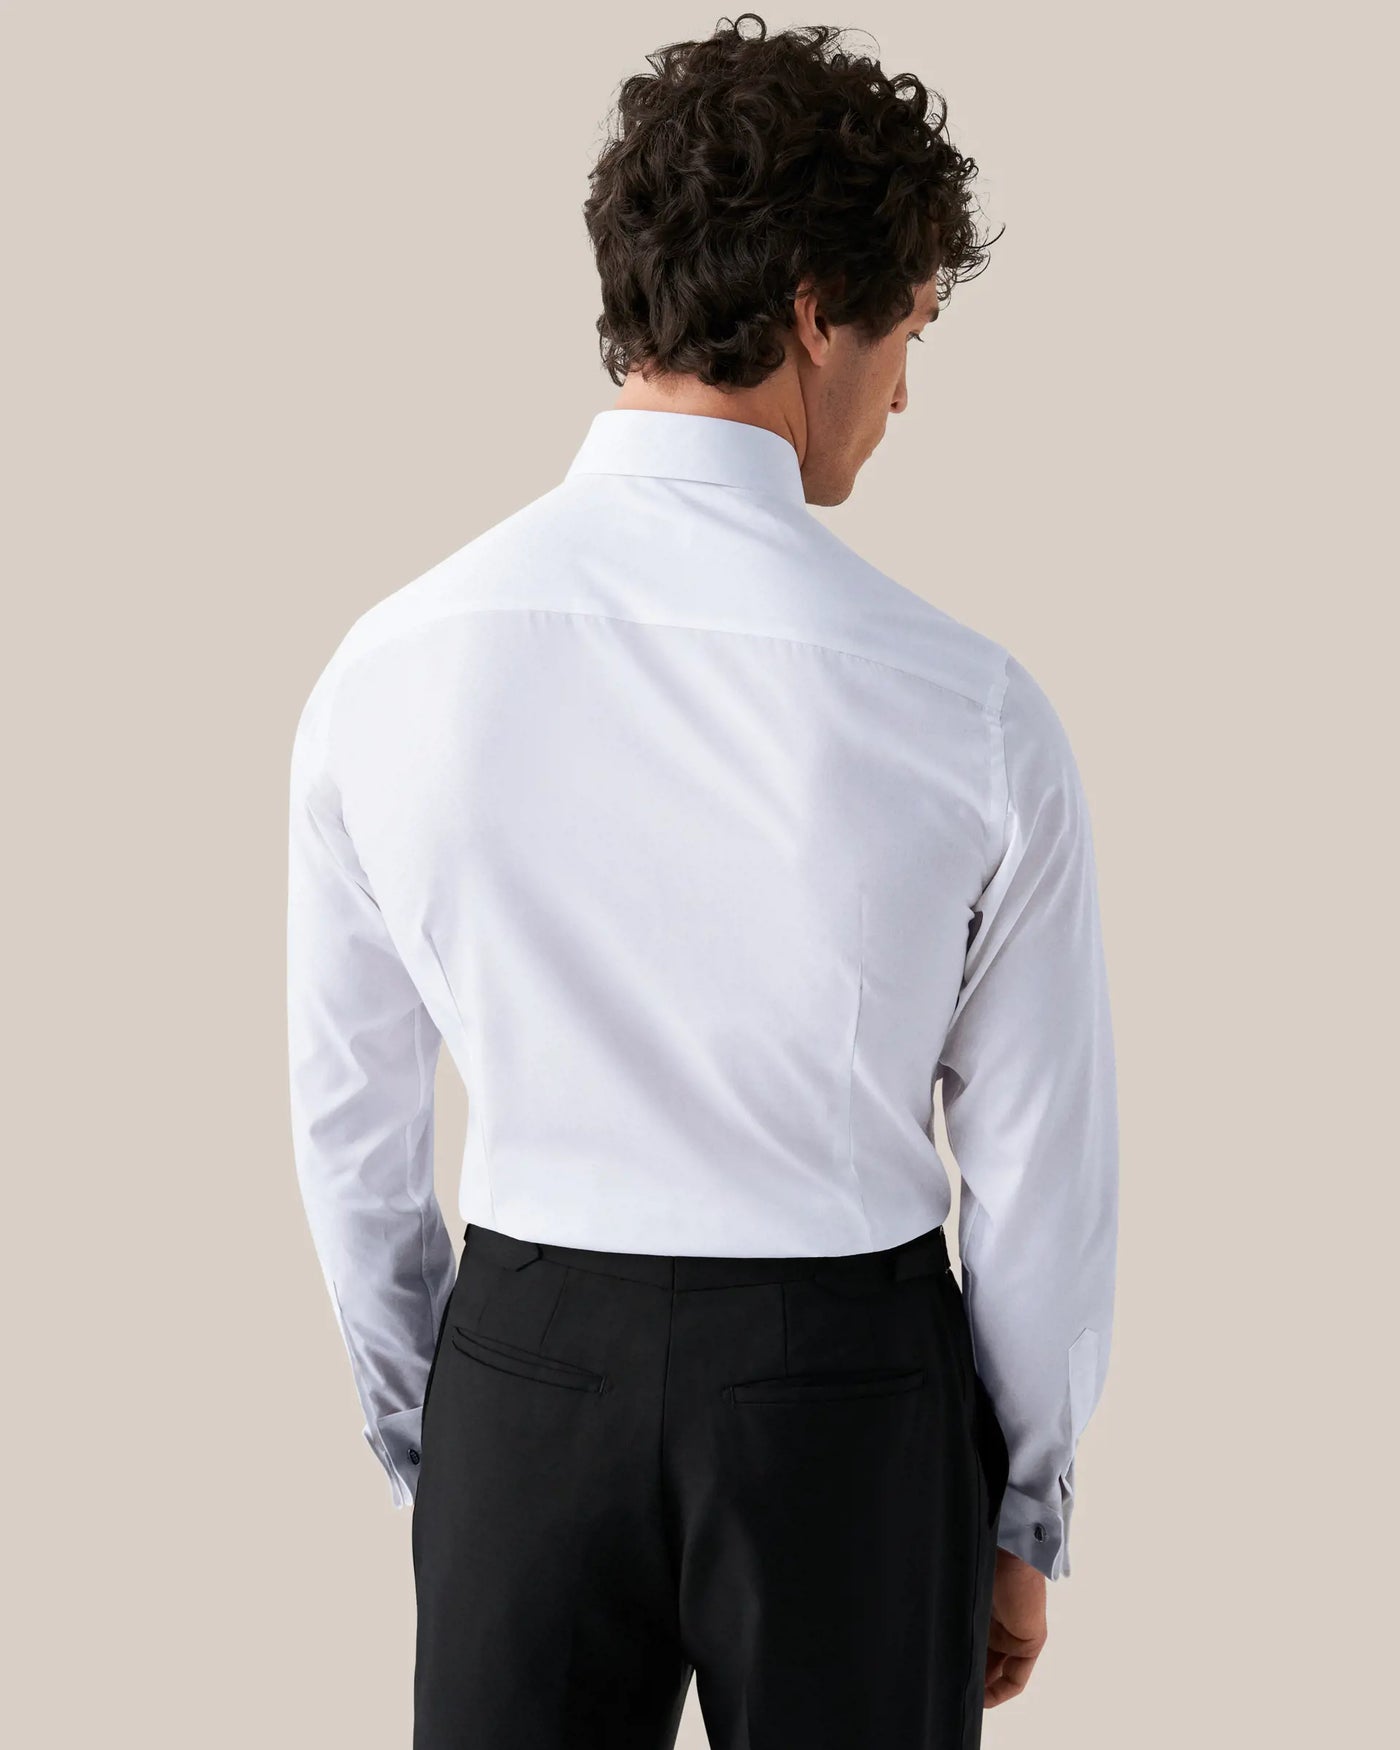 Eton Piqué Tuxedo Shirt in White